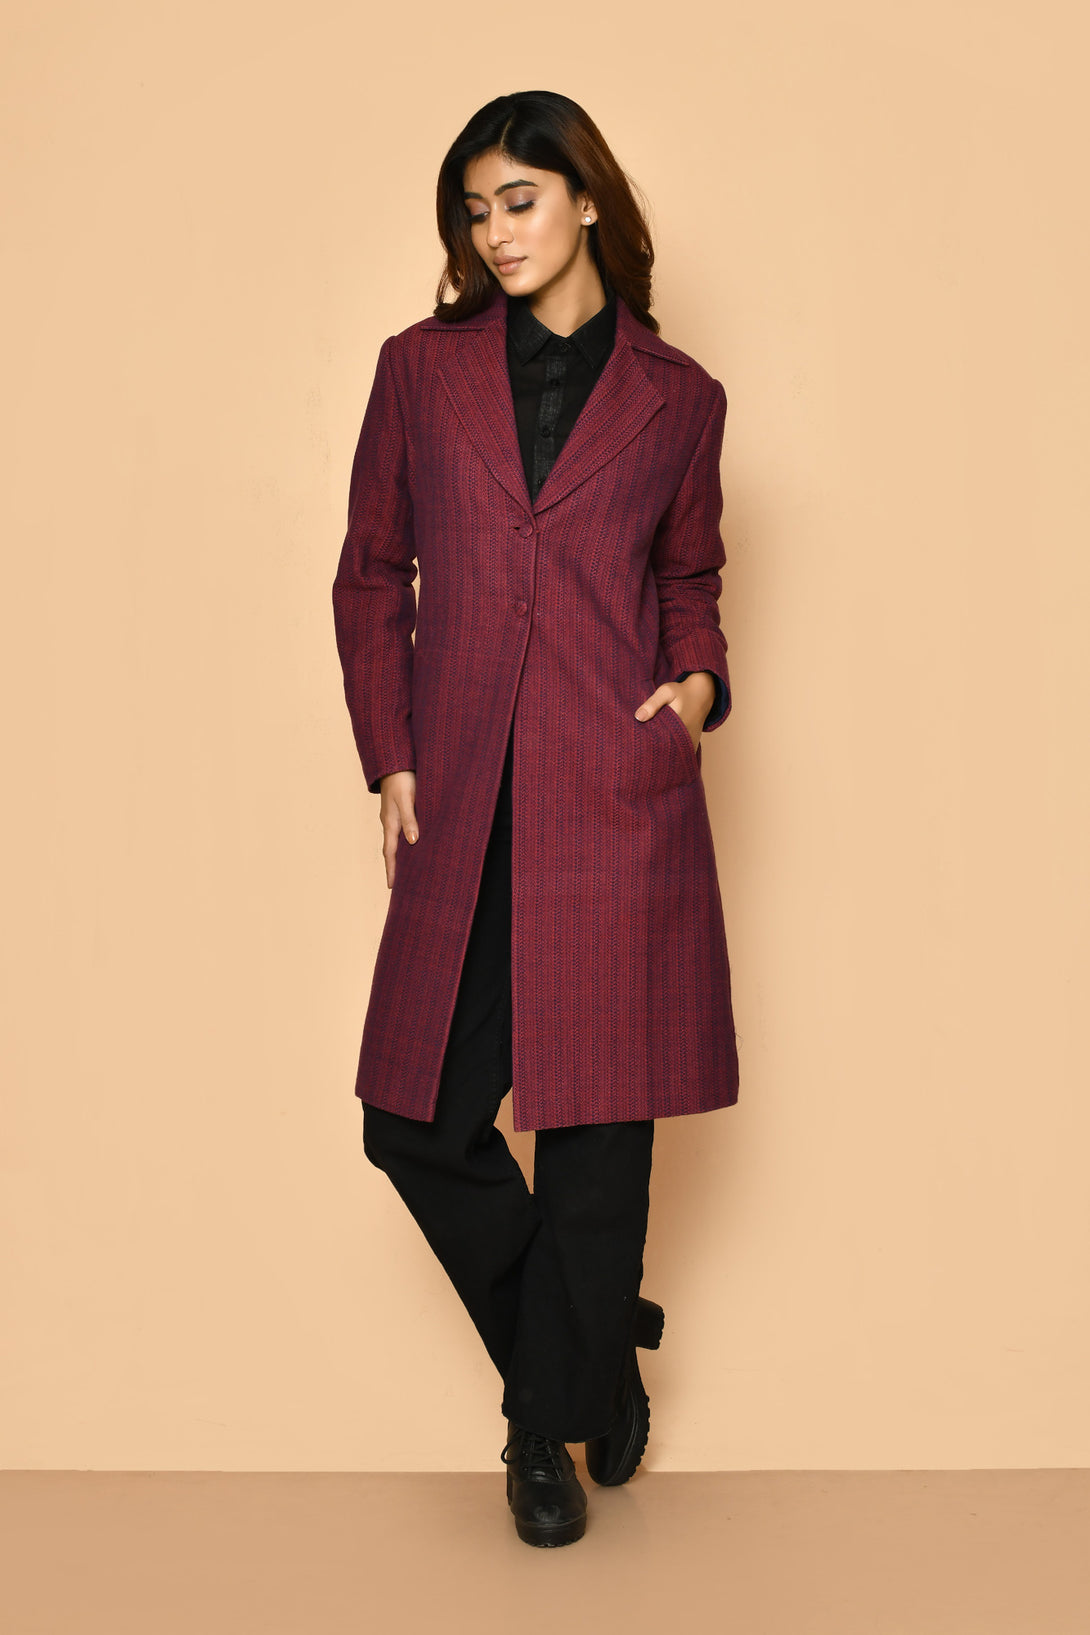 Best handloom cotton long jacket for women corporate wear